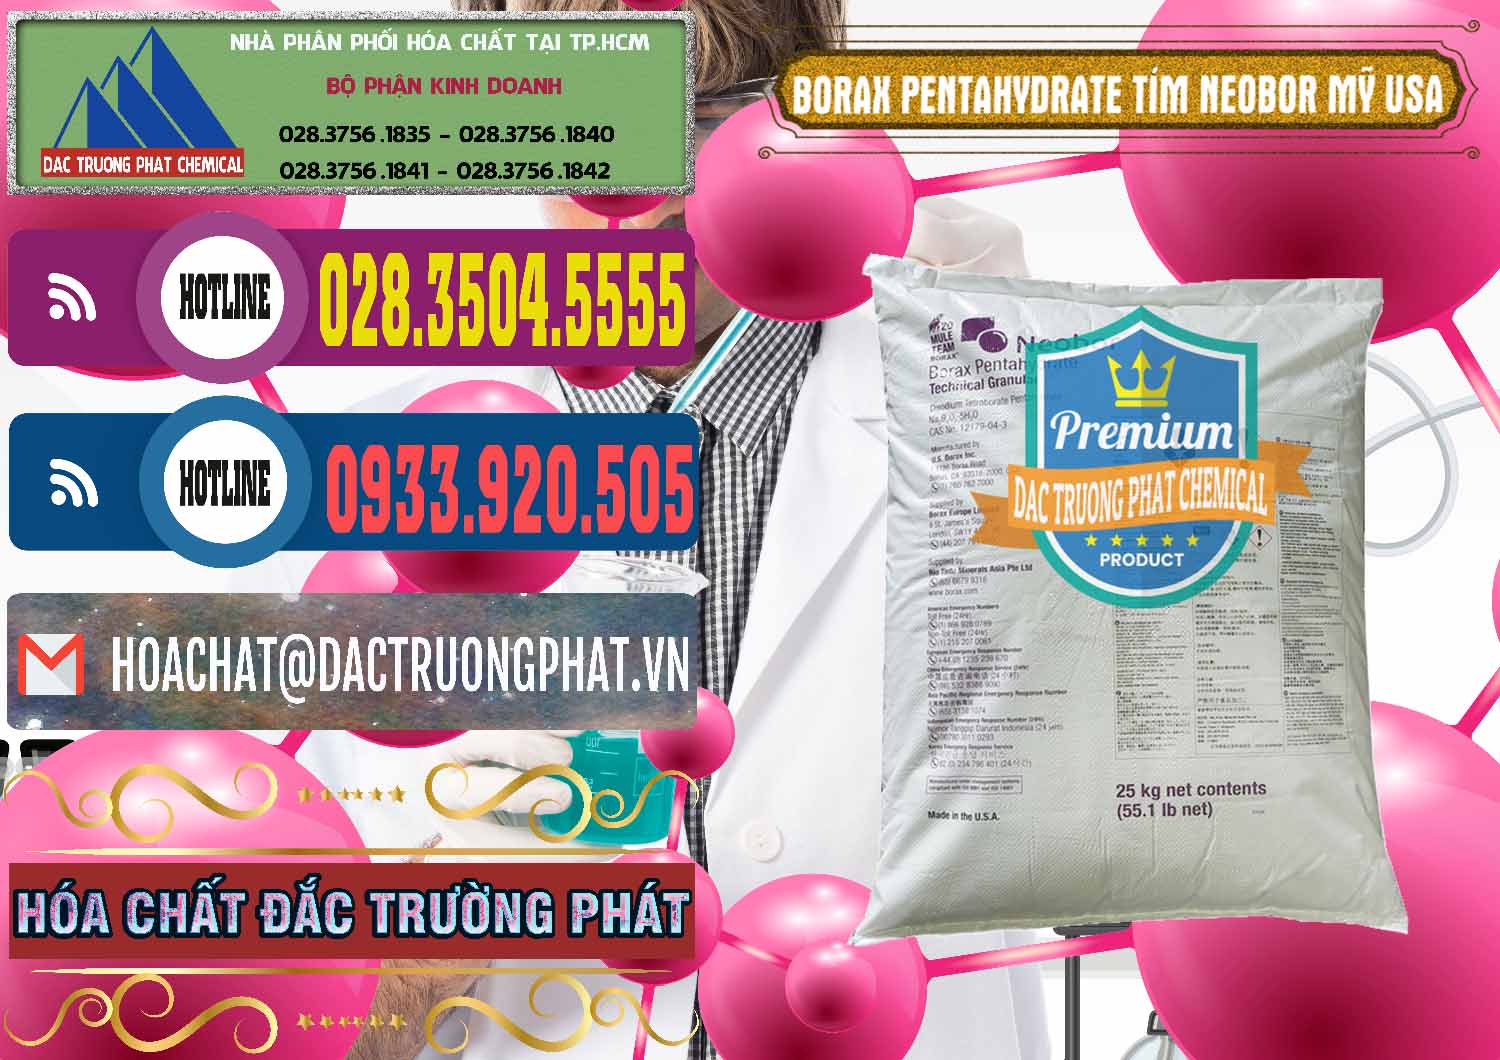 Nơi bán Borax Pentahydrate Bao Tím Neobor TG Mỹ Usa - 0277 - Nhà cung ứng _ phân phối hóa chất tại TP.HCM - muabanhoachat.com.vn